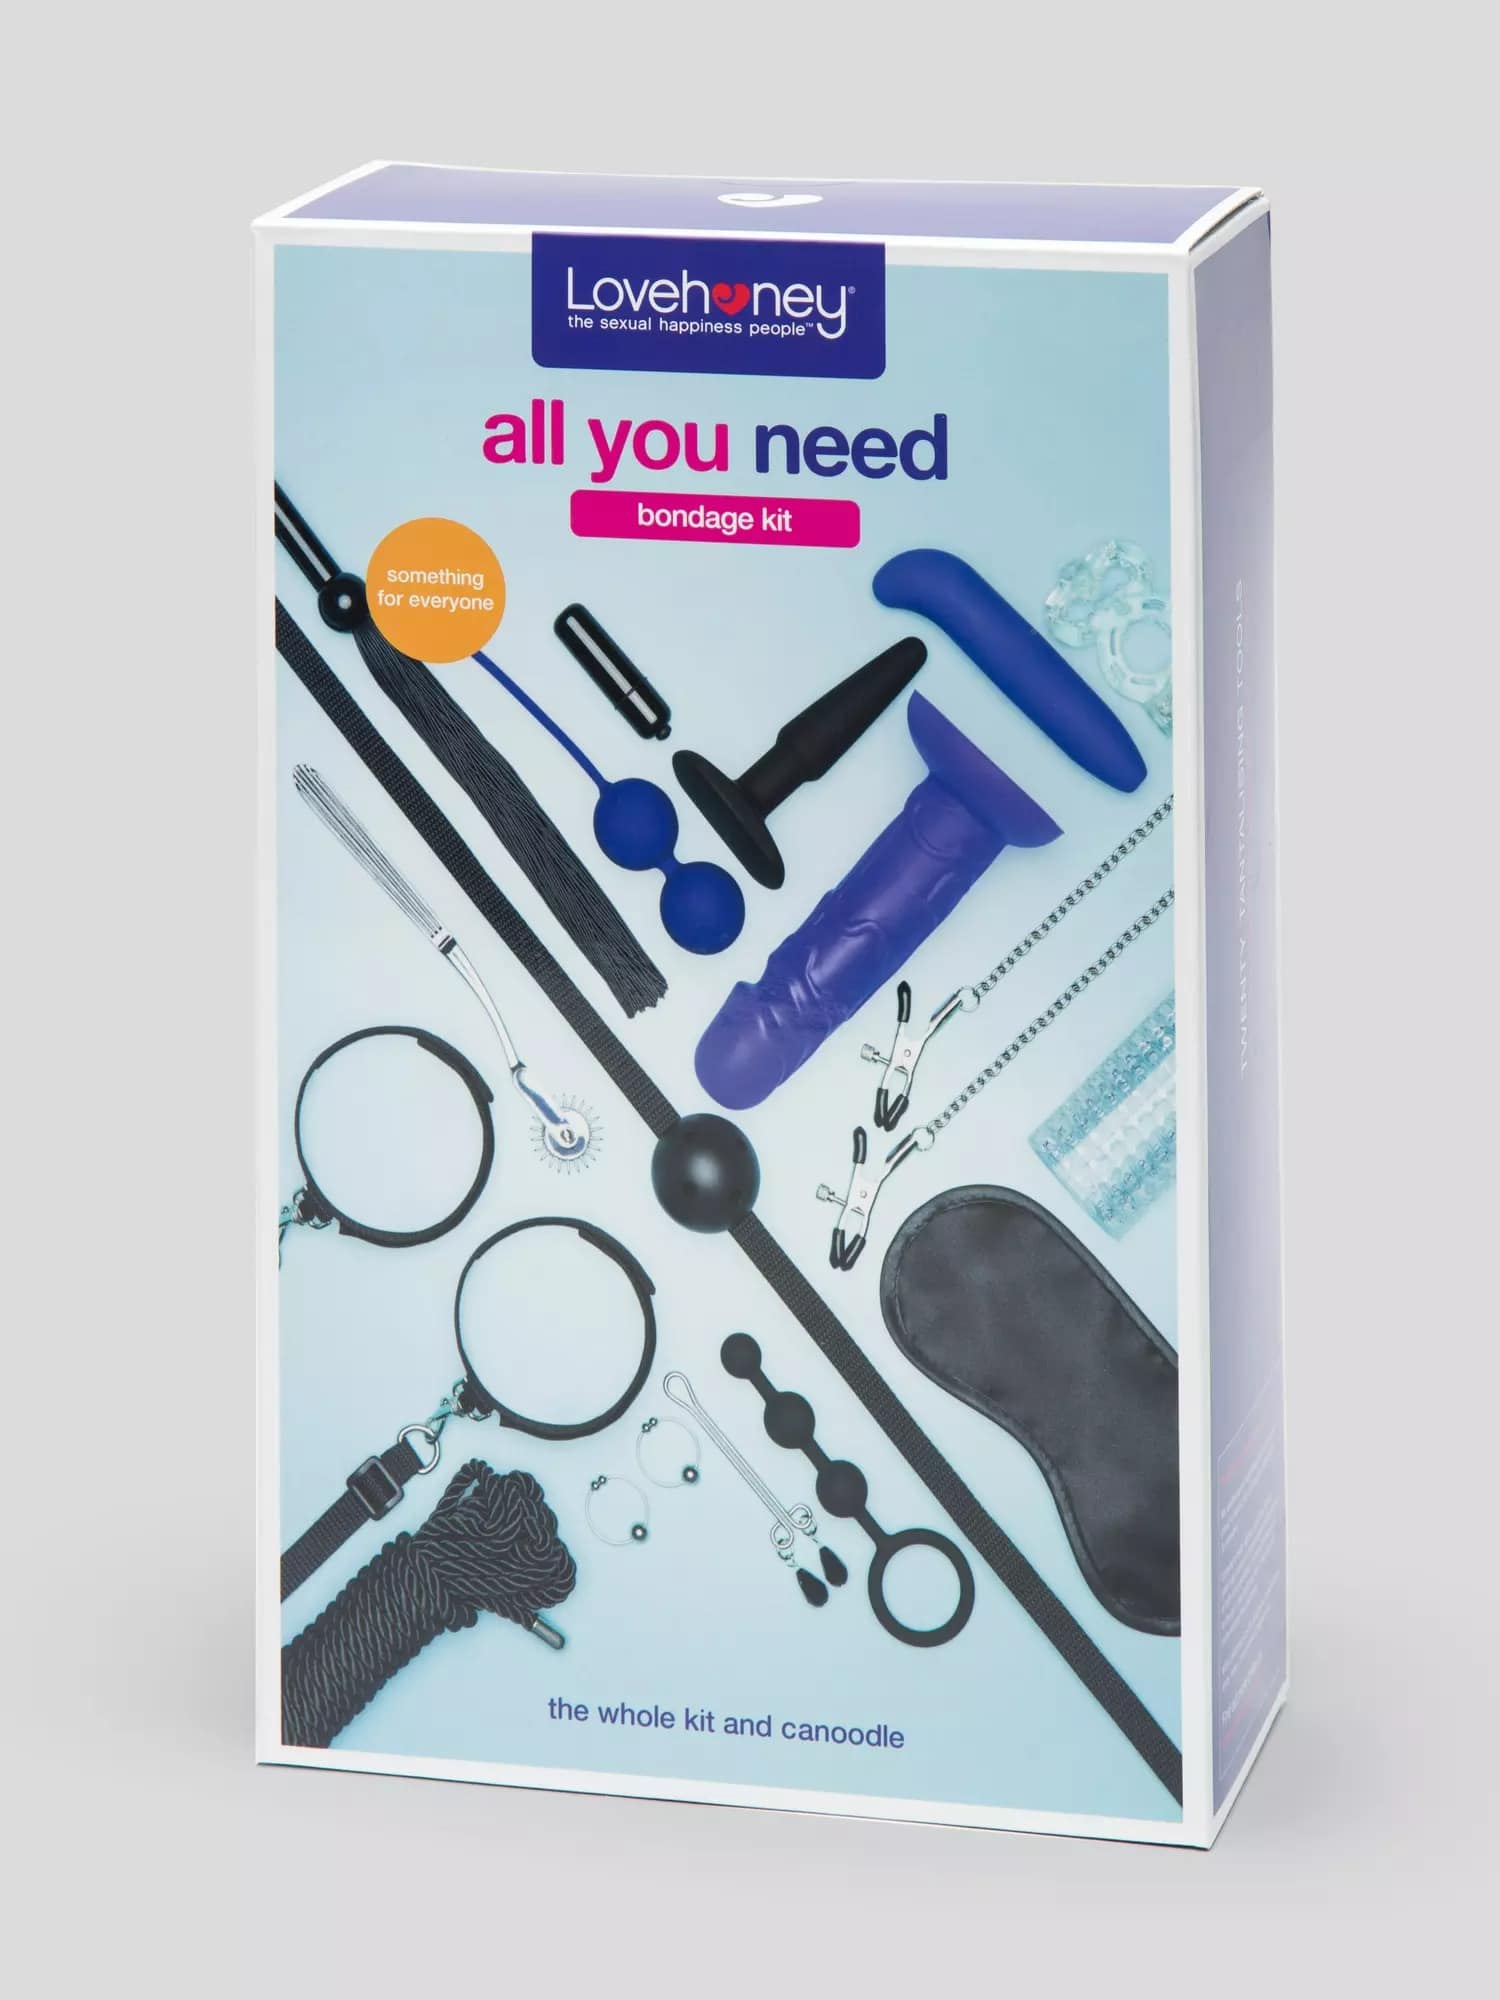 All You Need Bondage Kit (20 Piece). Slide 6